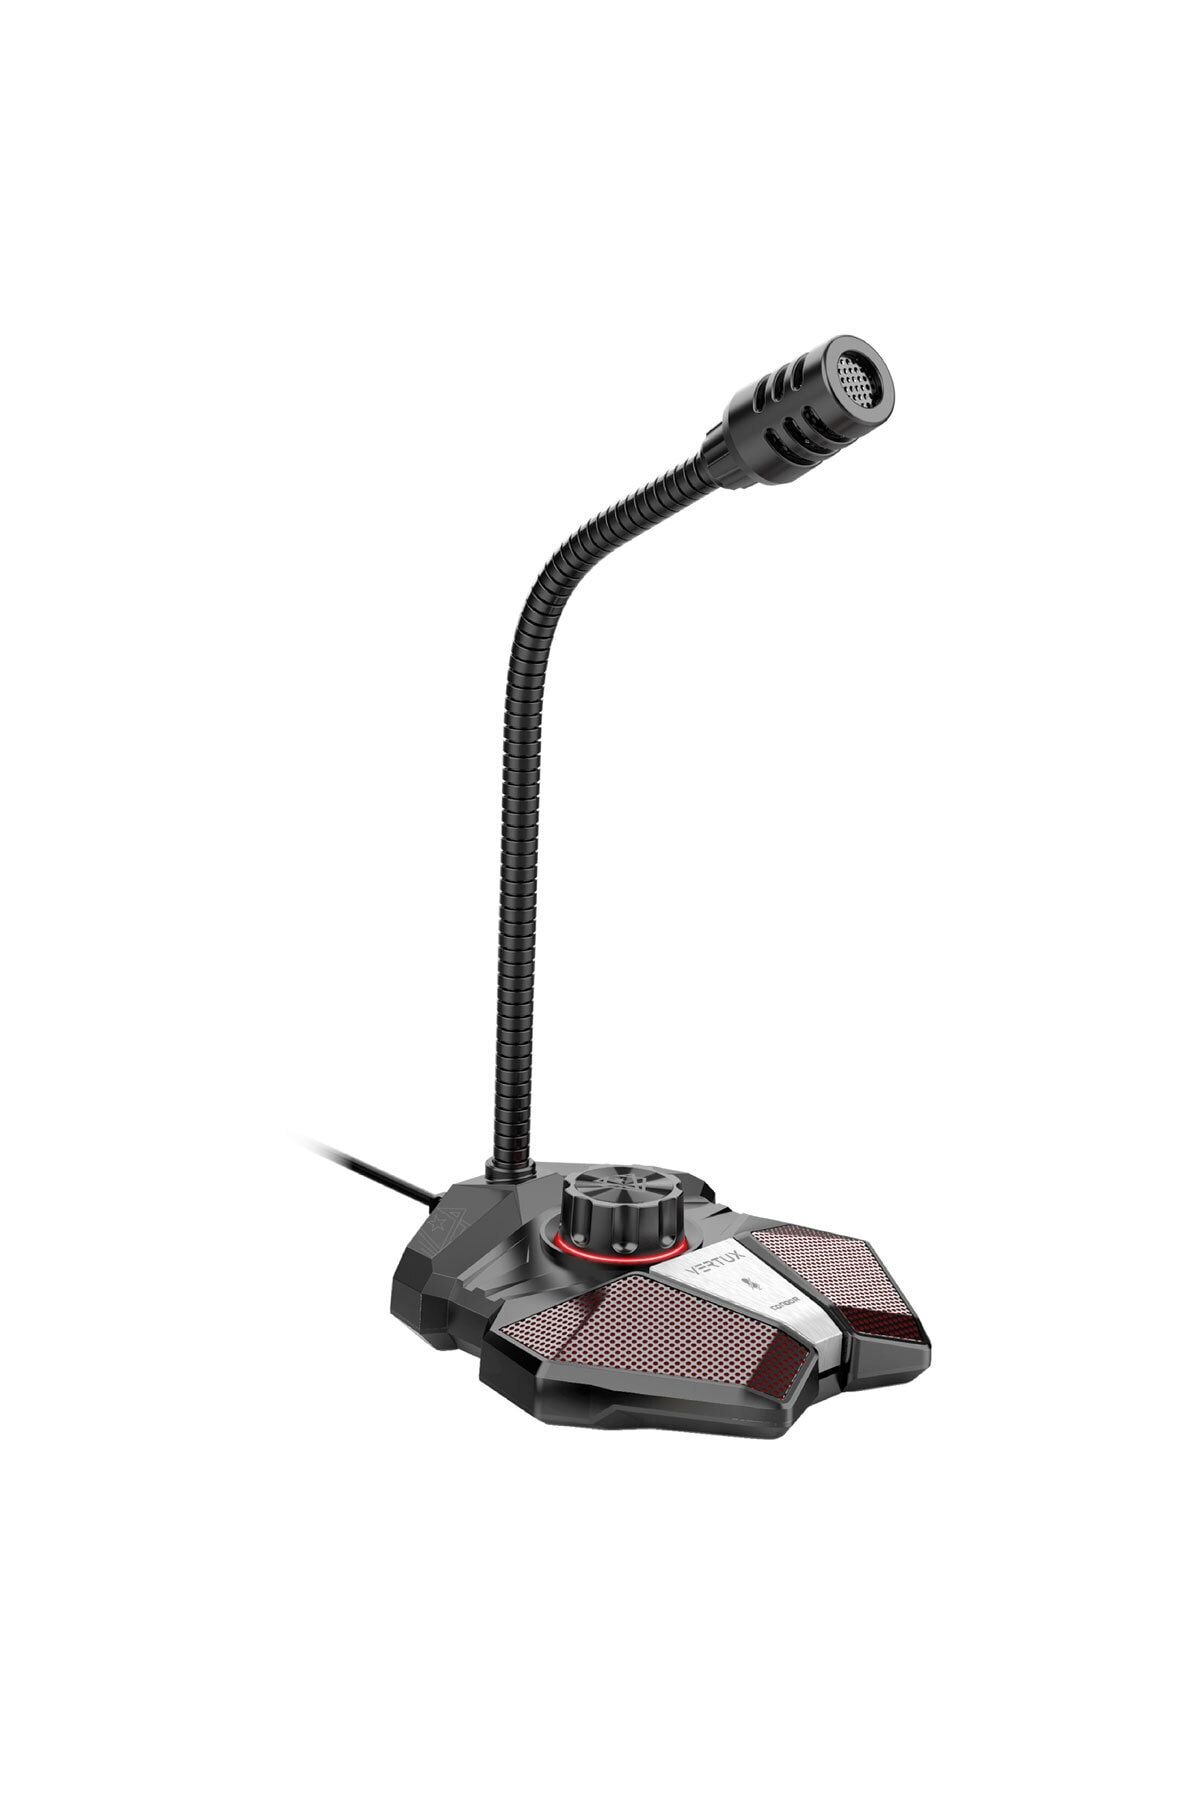 VERTUX Oyuncu Mikrofonu Ses Kontrollü Yüksek Hassasiyetli Çok Yönlü - Condor